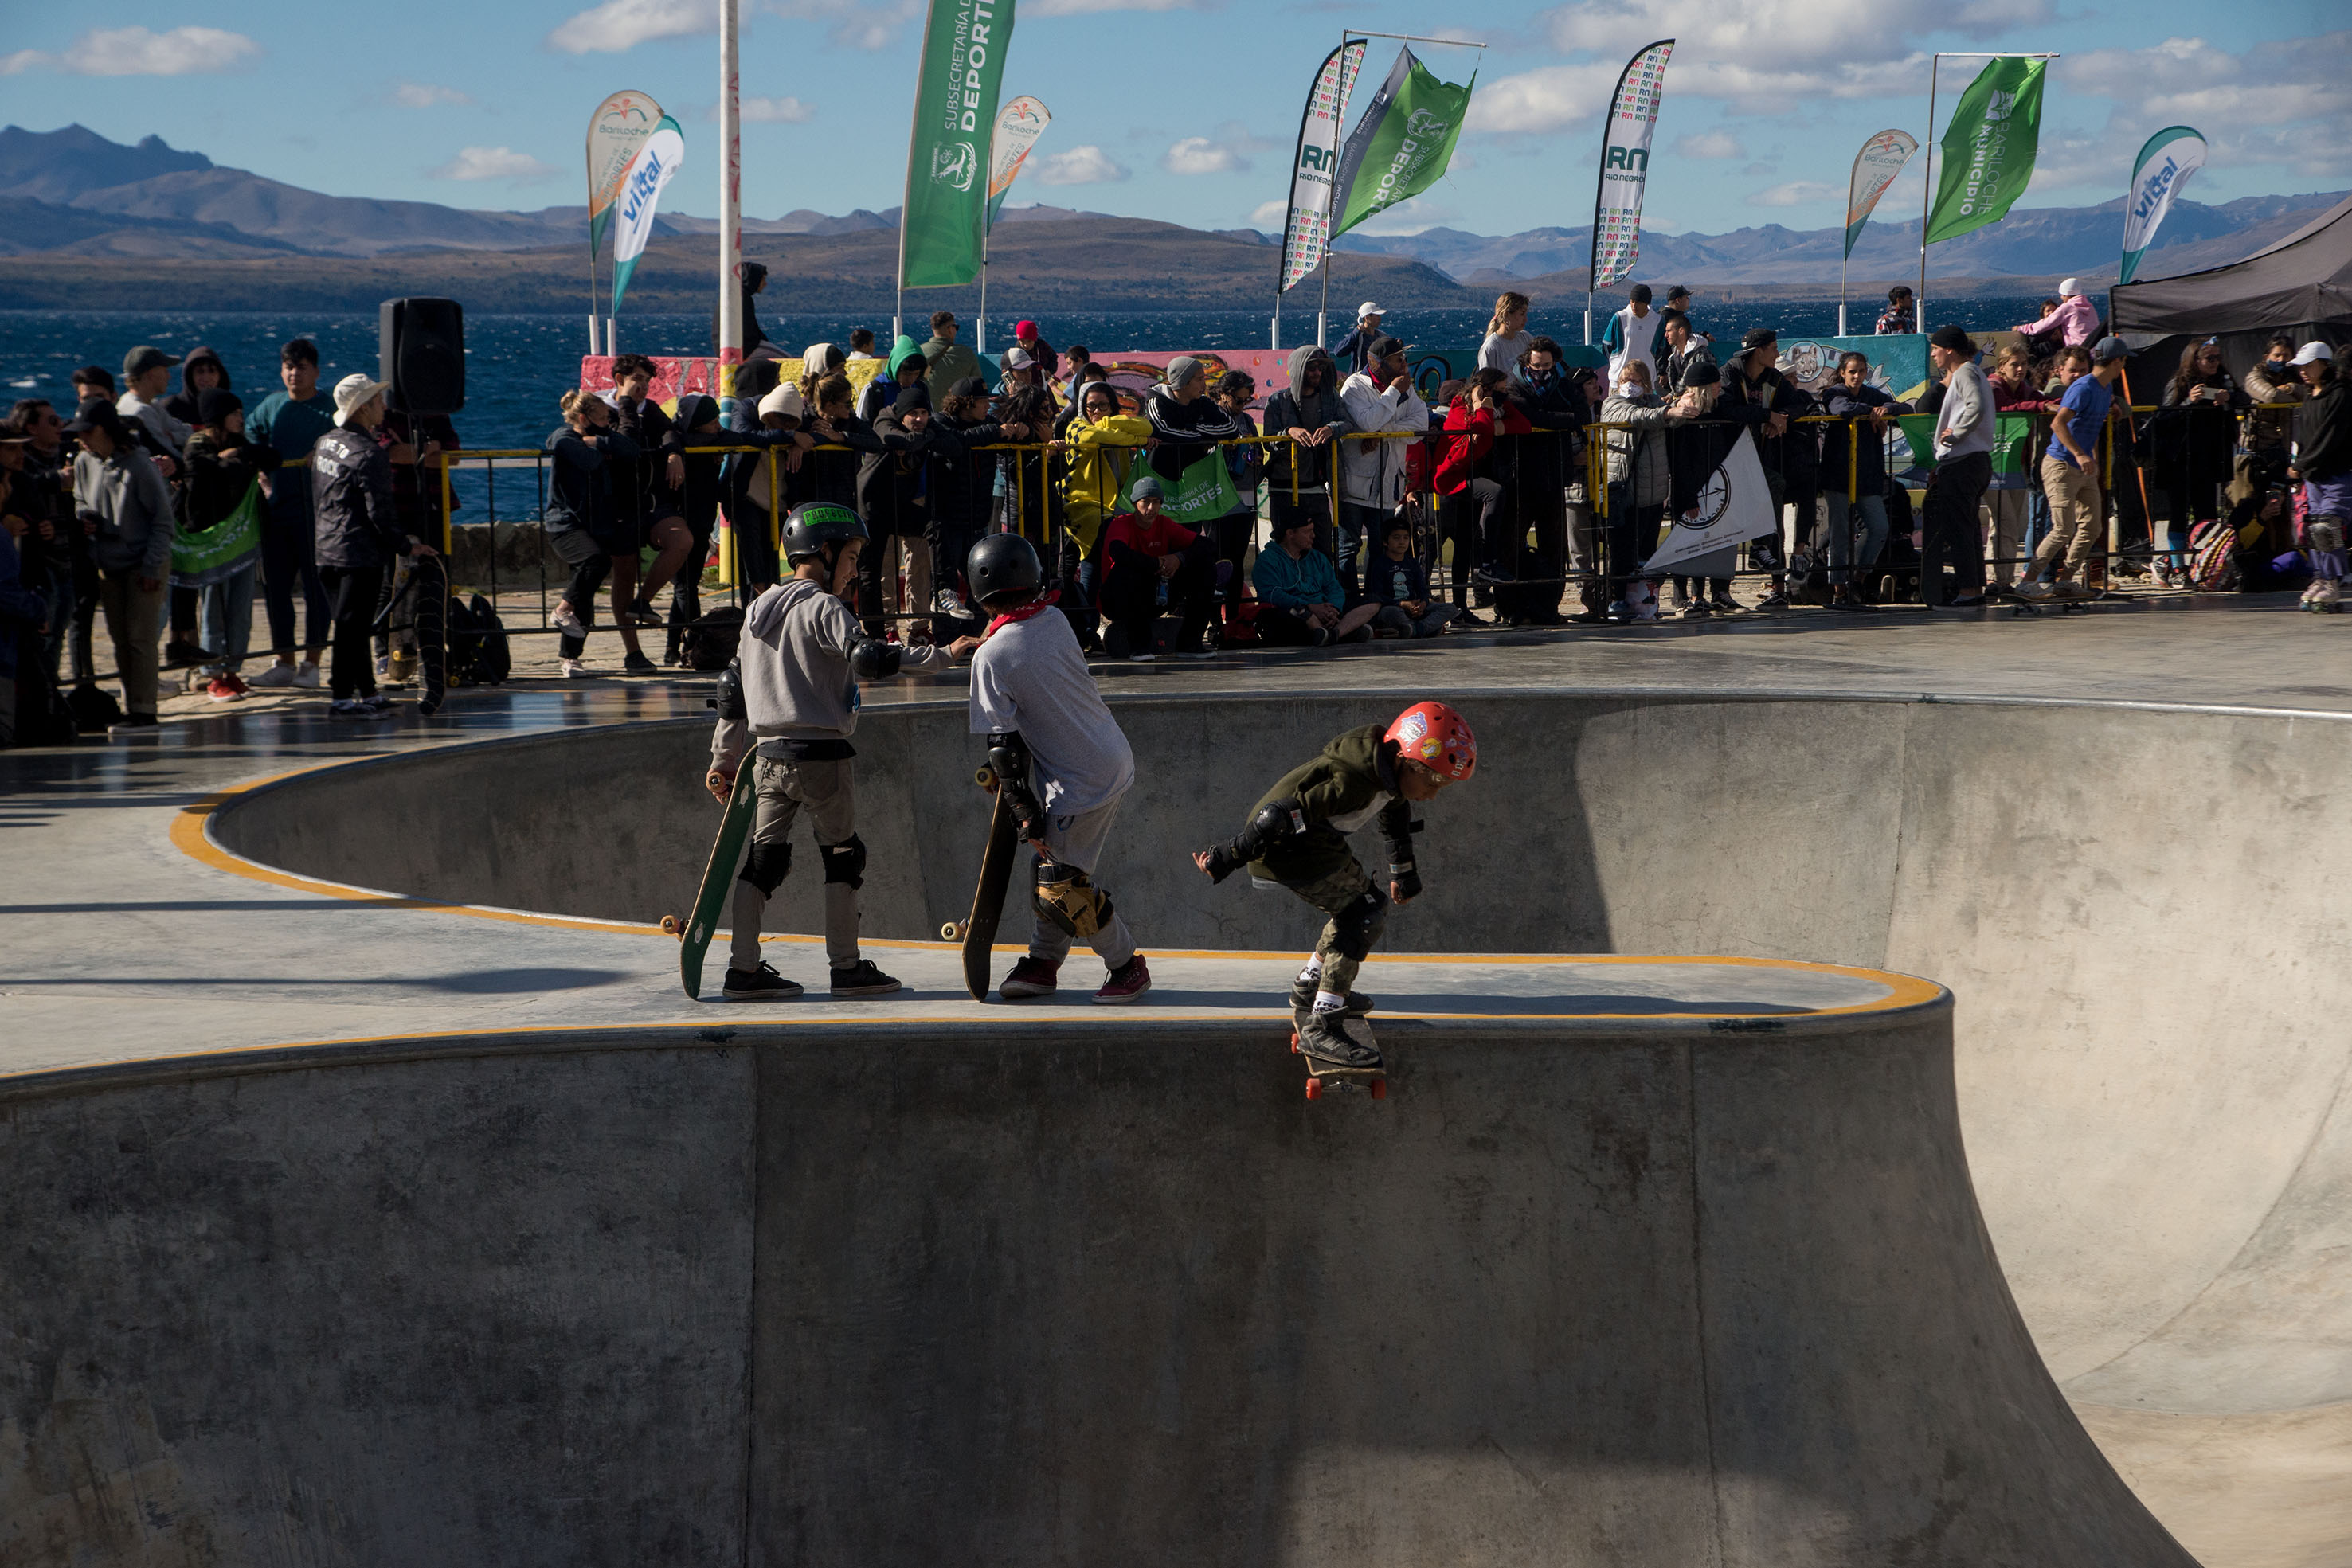 La pista de skate park se convirtió en un lugar de encuentro para jóvenes y no tan jóvenes de la ciudad cordillerana. Foto: archivo